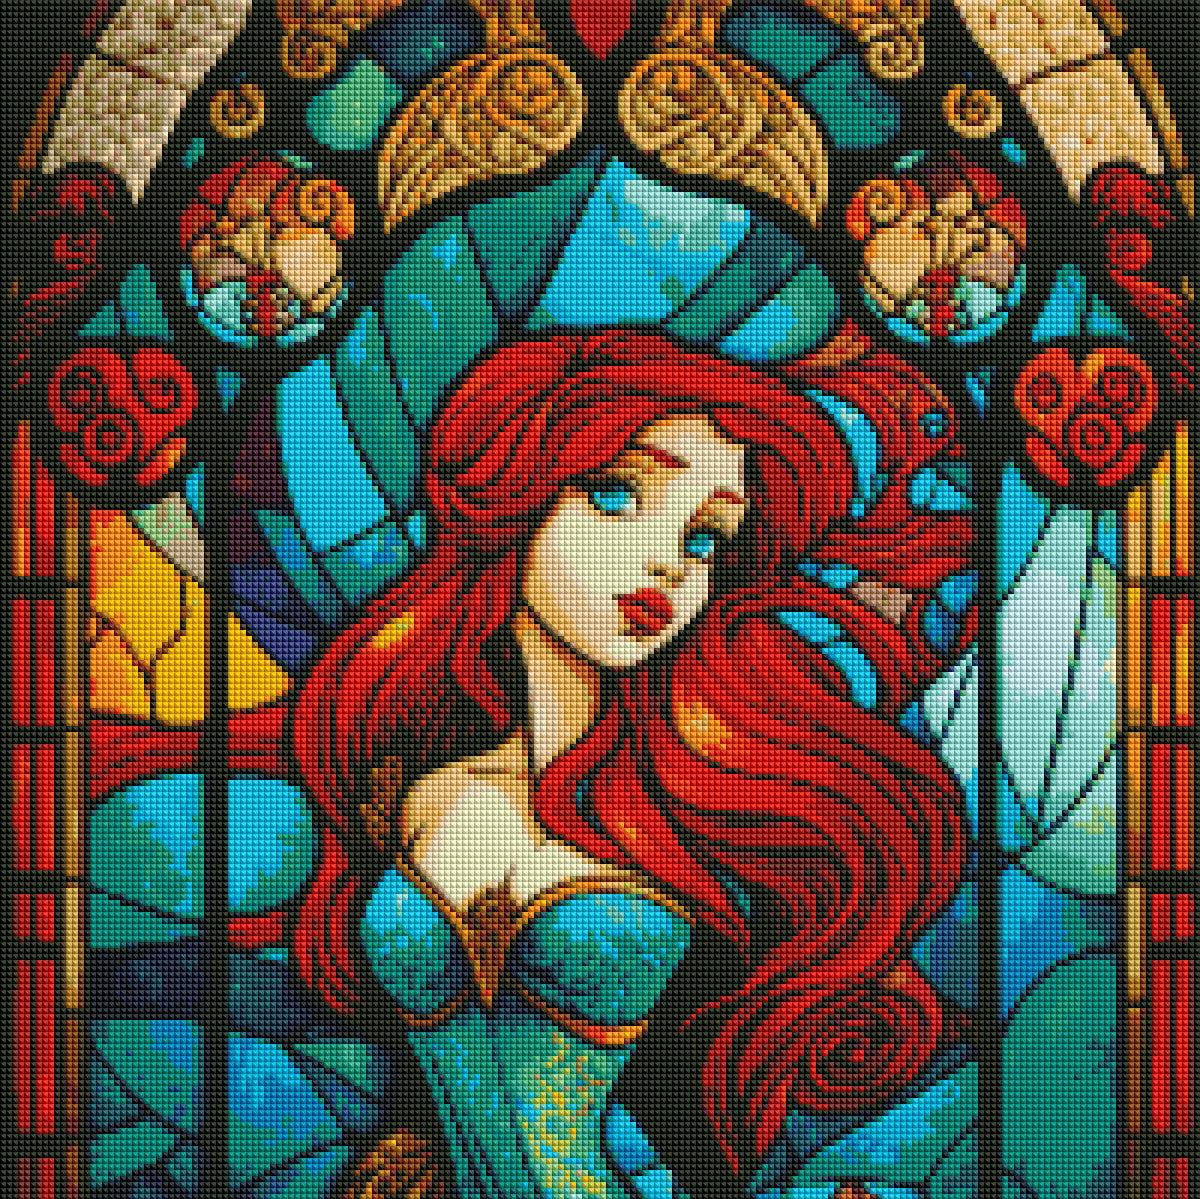 Mermaid Princess of the Sea Stained Glass-Diamond Painting Kit-Heartful Diamonds